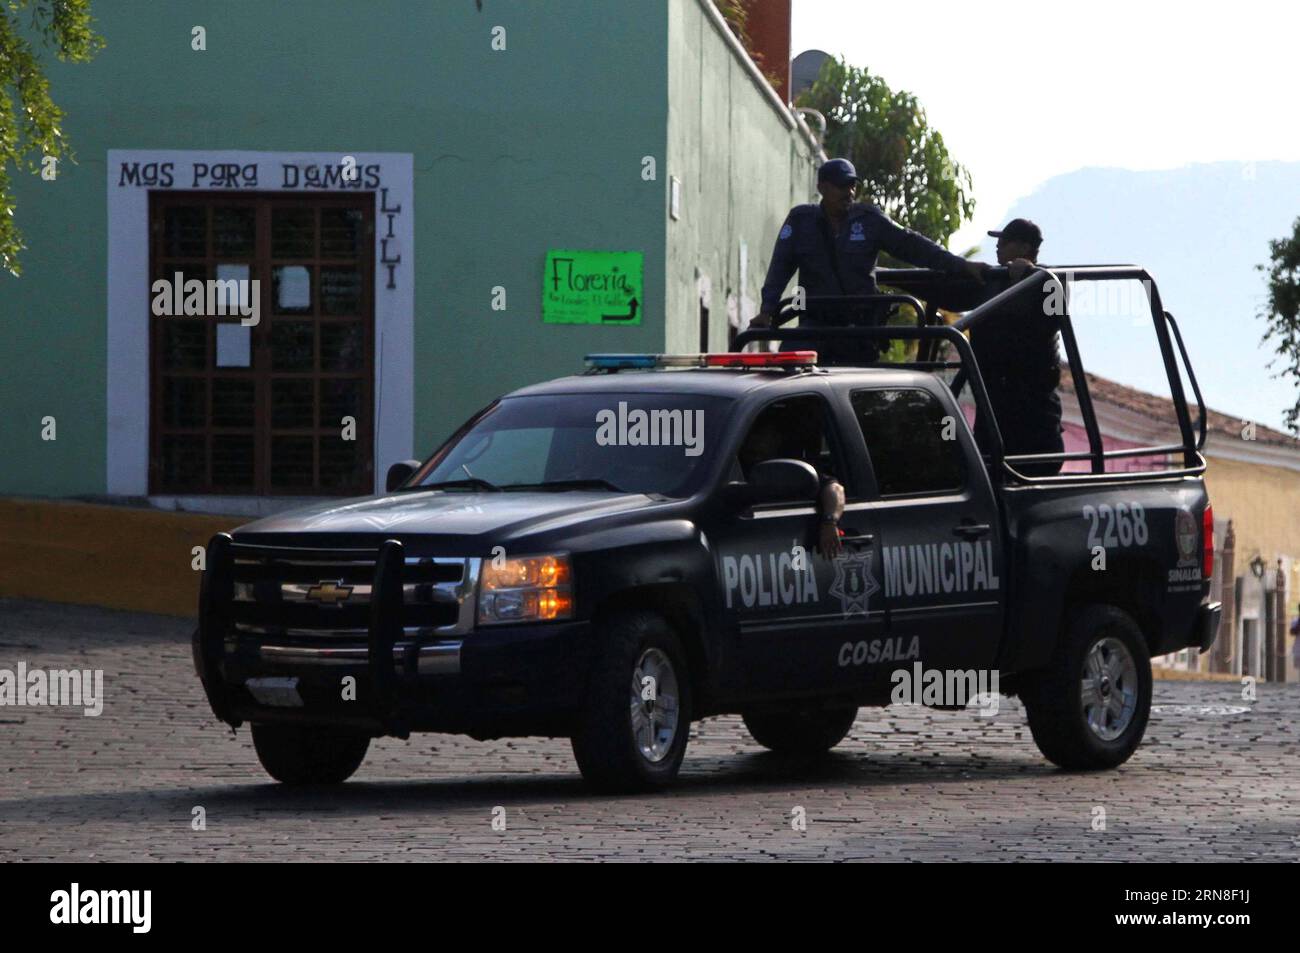 SINALOA, le 20 octobre 2015 -- la police municipale garde une rue pendant une opération de perquisition du roi du cartel de la drogue du Mexique, Joaquin El Chapo Guzman, à Cosala, Sinaloa, Mexique, le 20 octobre 2015. Les autorités mexicaines ont intensifié leurs opérations, principalement dans les États de Sinaloa, Durango et Chihuahua, pour capturer Joaquin El Chapo Guzman, l un des trafiquants de drogue les plus recherchés au monde, après son évasion d une prison de haute sécurité en juillet. (rtg) (da) MEXICO-SINALOA-SECURITY-GUZMAN JUANxPEREZ PUBLICATIONxNOTxINxCHN Sinaloa OCT 20 2015 Garde municipale d'une rue lors d'une opération de perquisition de Mexico S Dru Banque D'Images